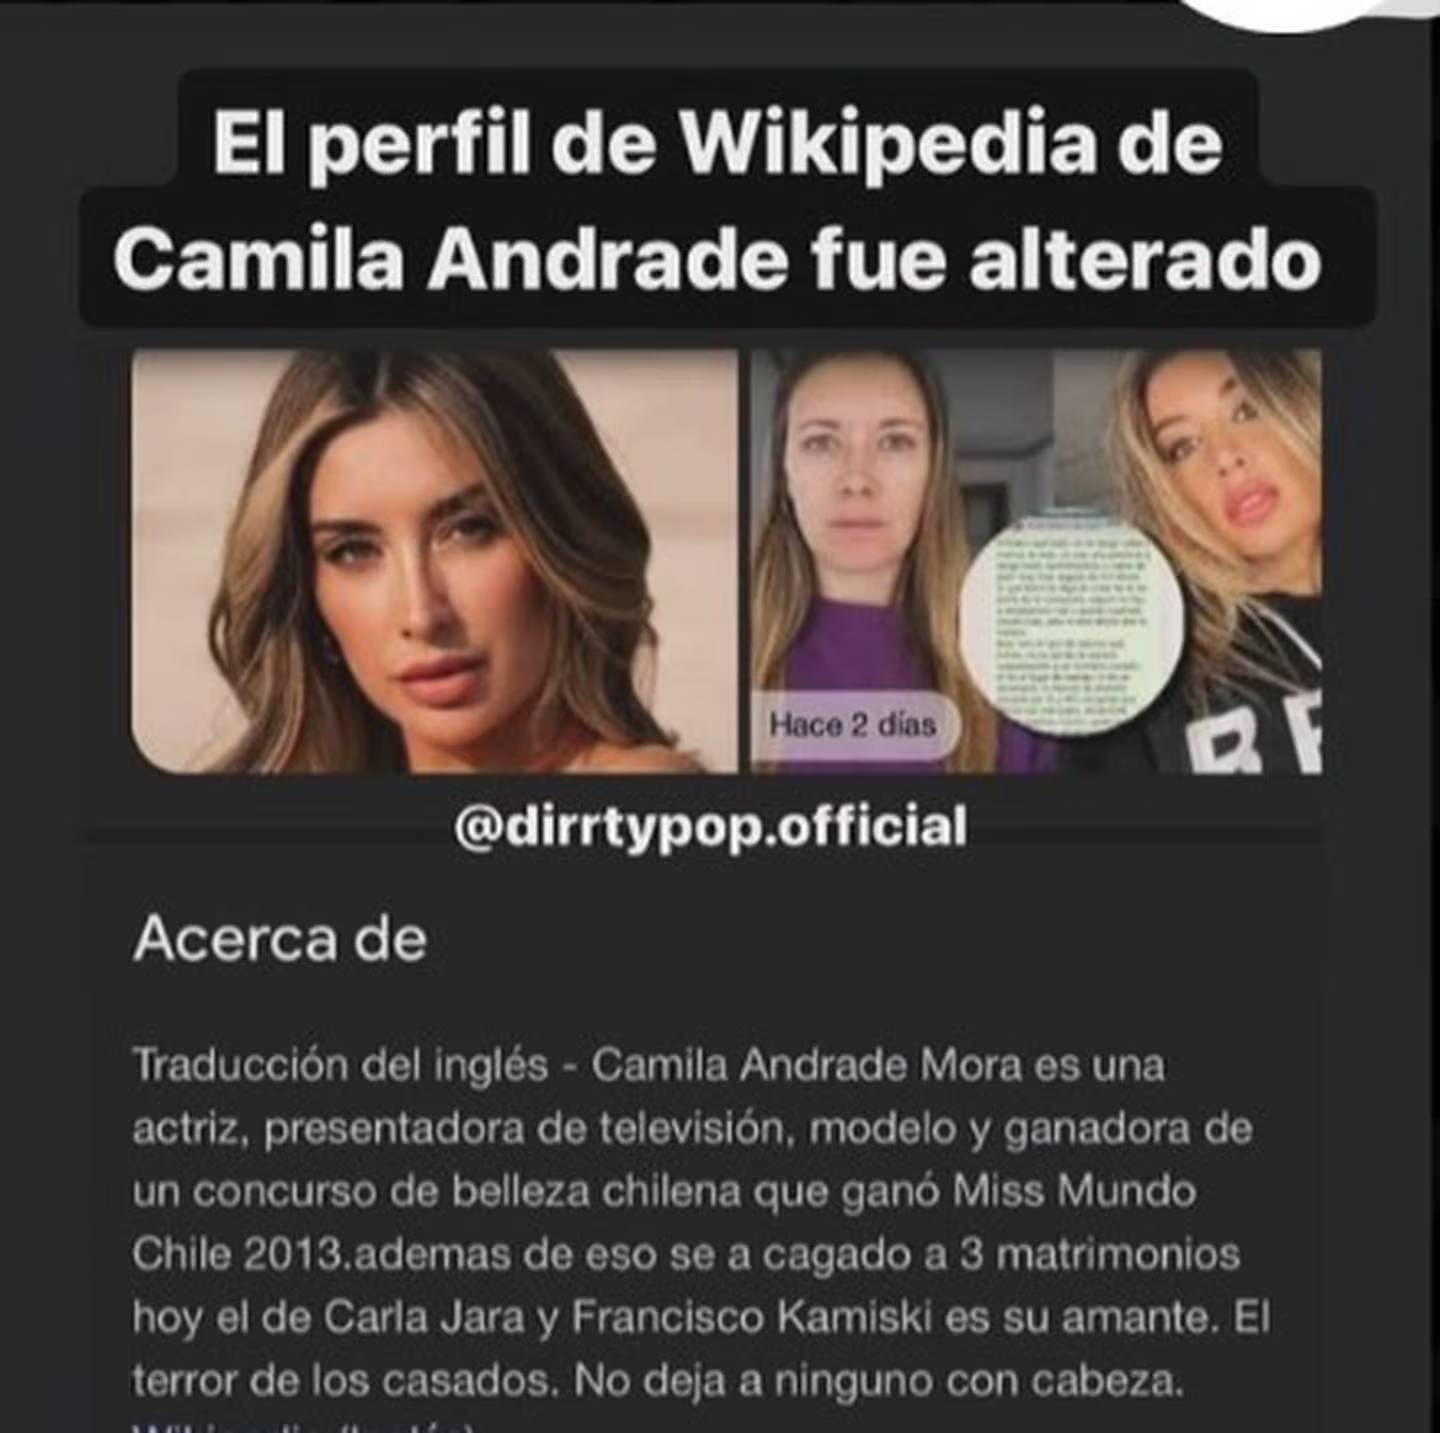 Camila Andrade en Wikipedia - Redes sociales